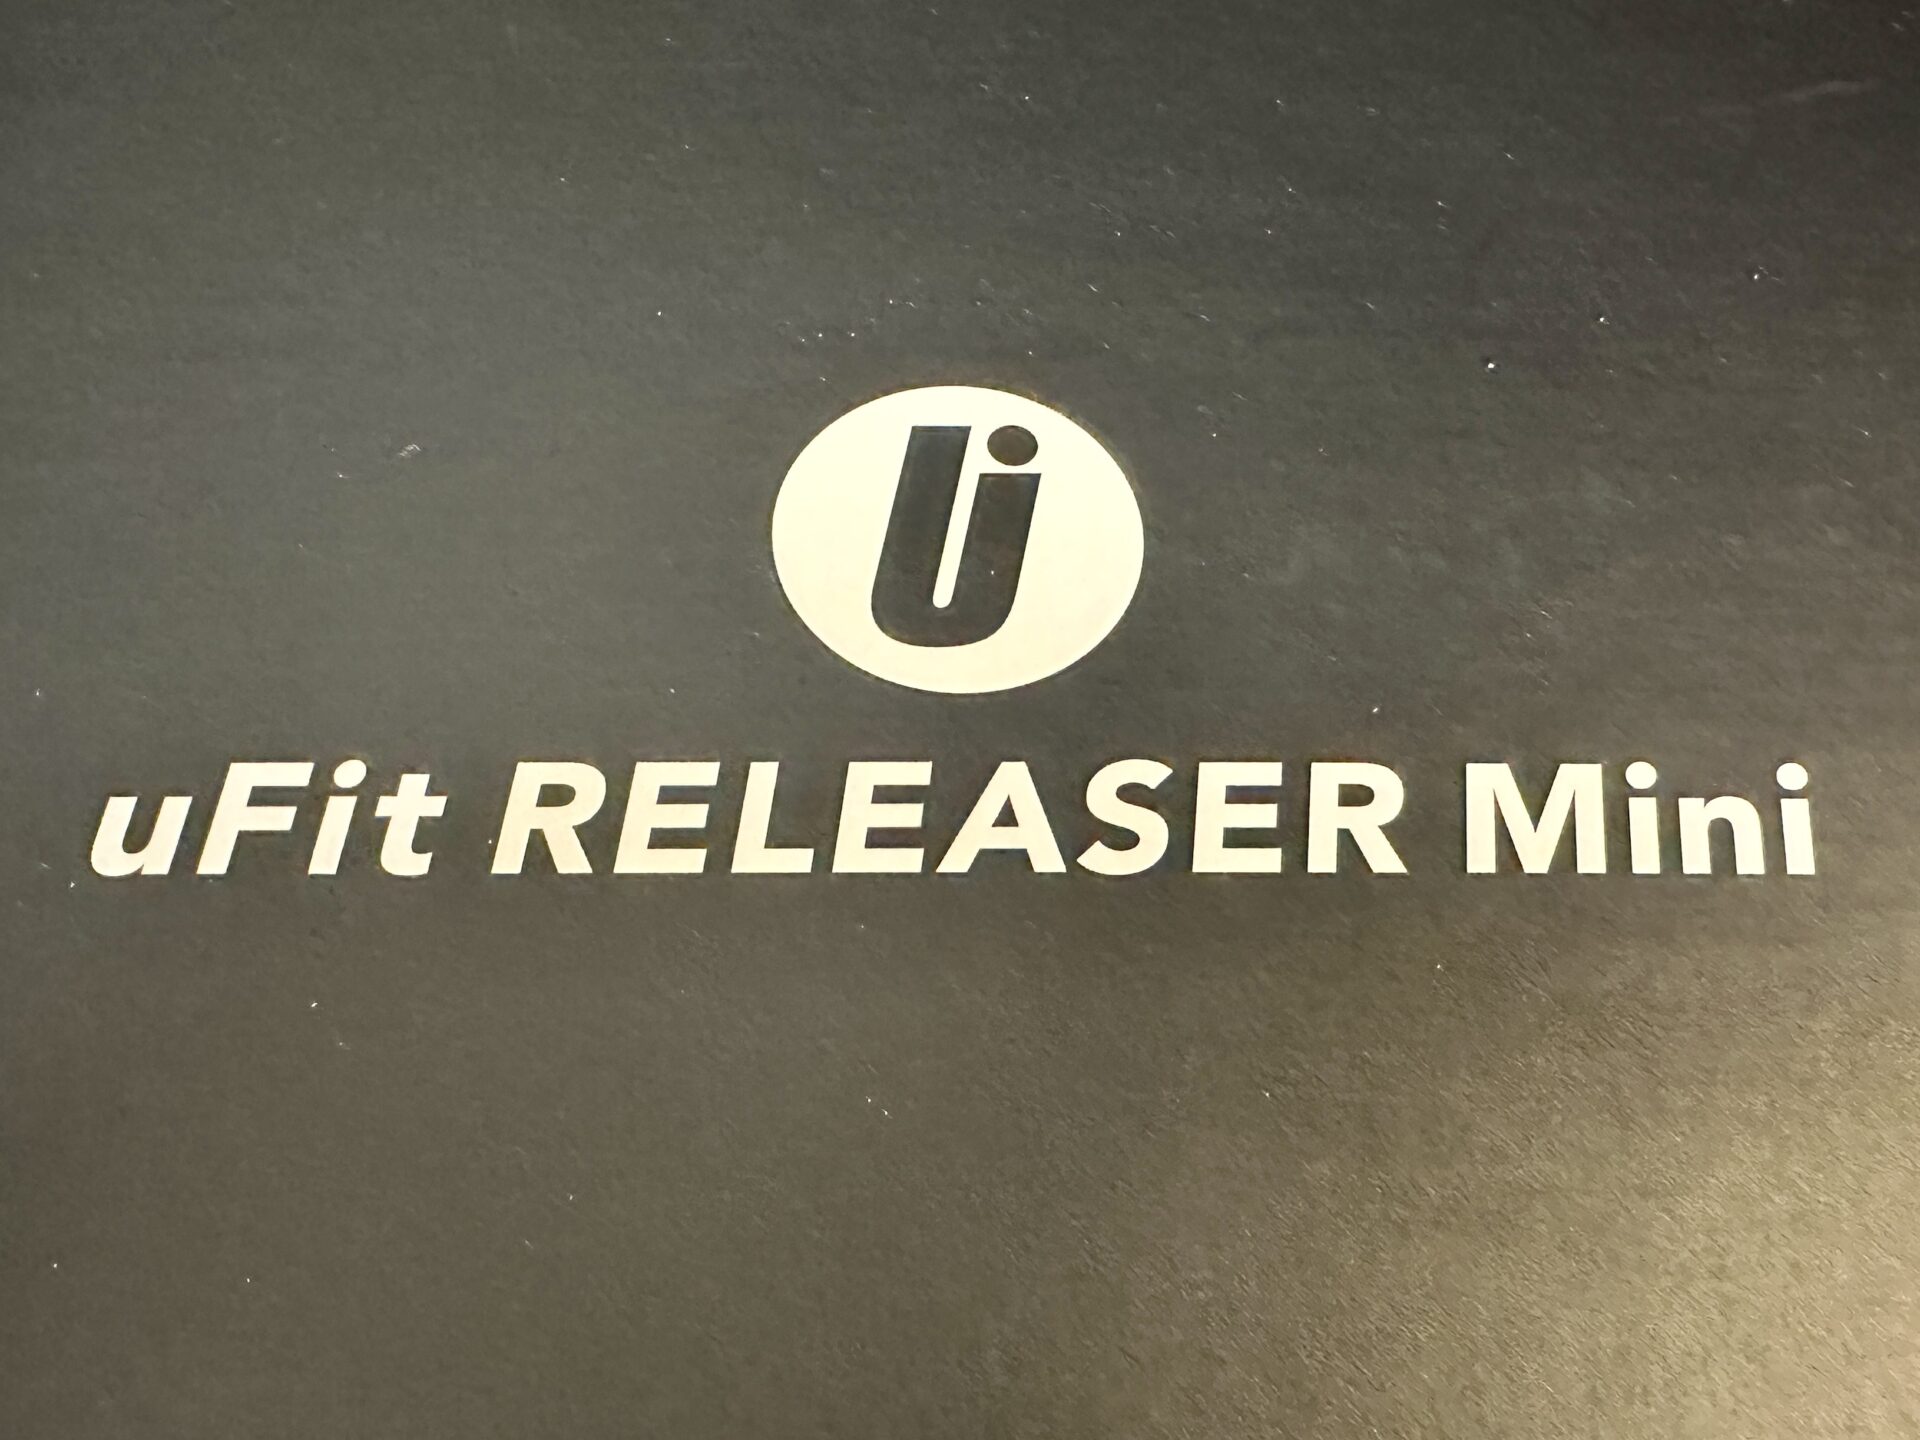 uFit RELEASER Miniをランニングのセルフケアで入手